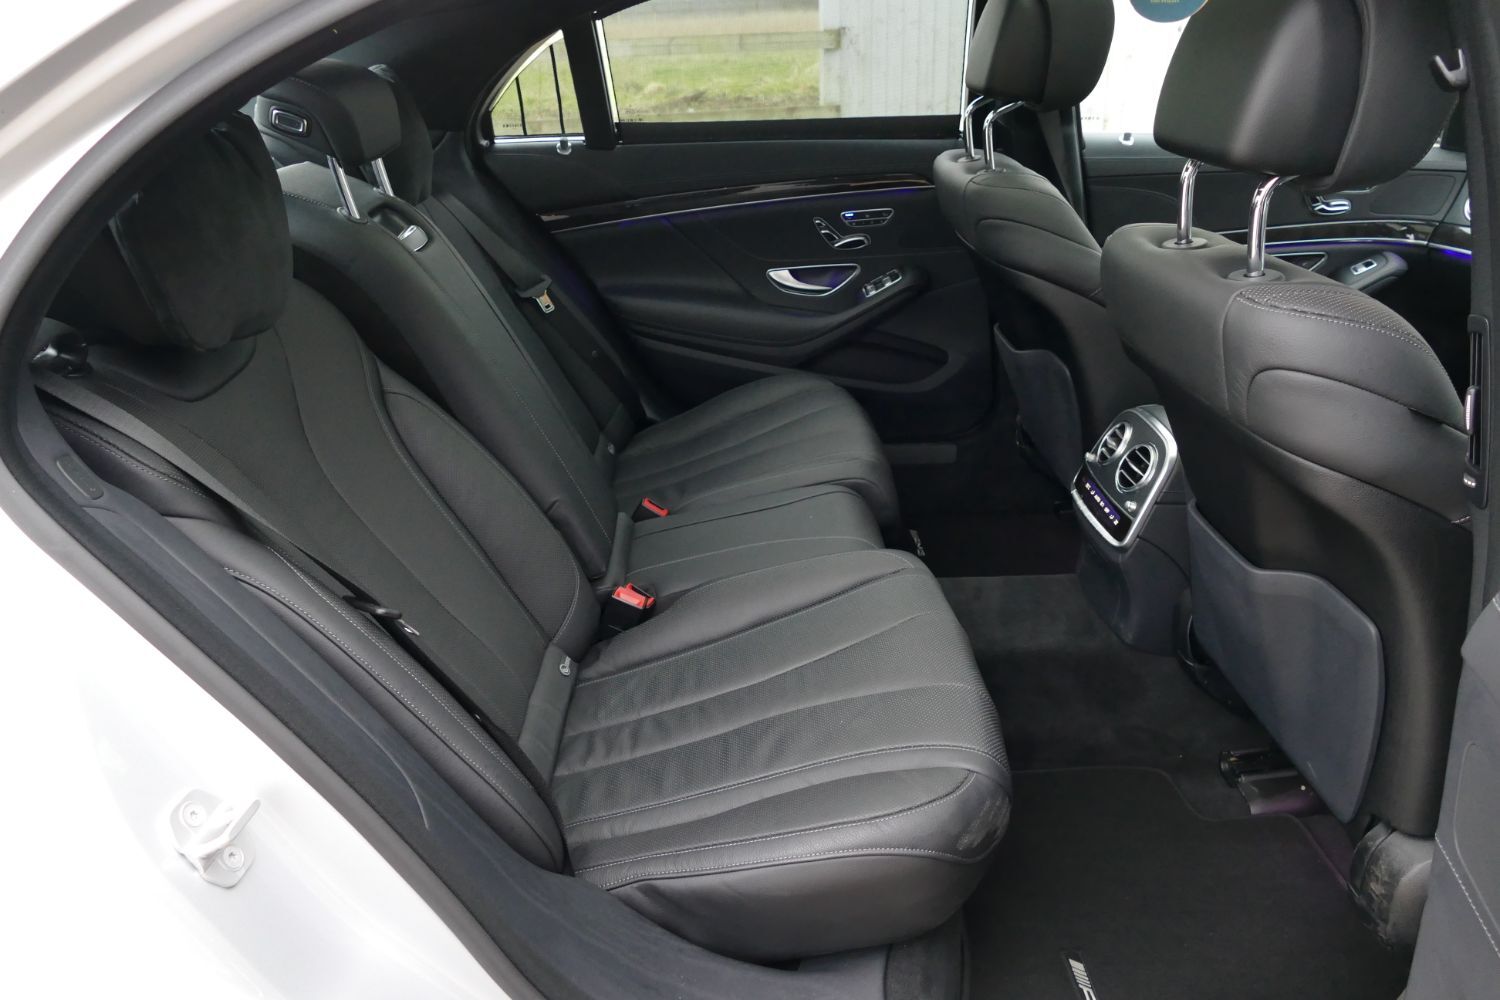 Mercedes-Benz S 63 AMG interior - Seats